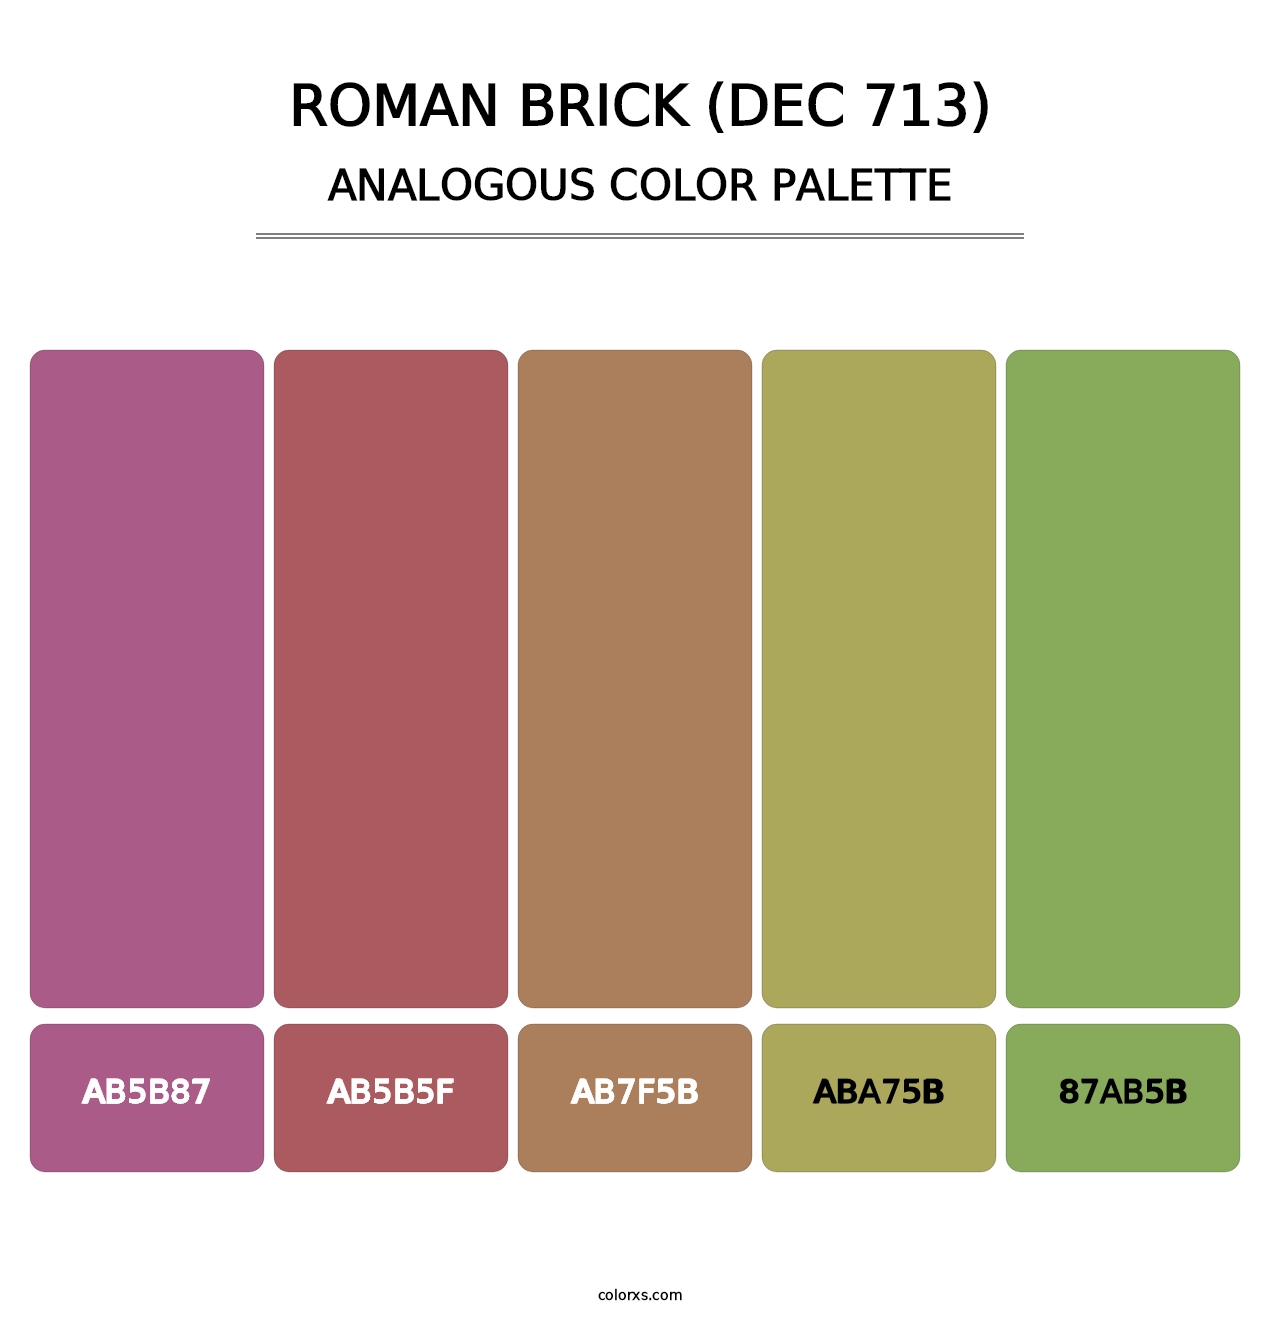 Roman Brick (DEC 713) - Analogous Color Palette